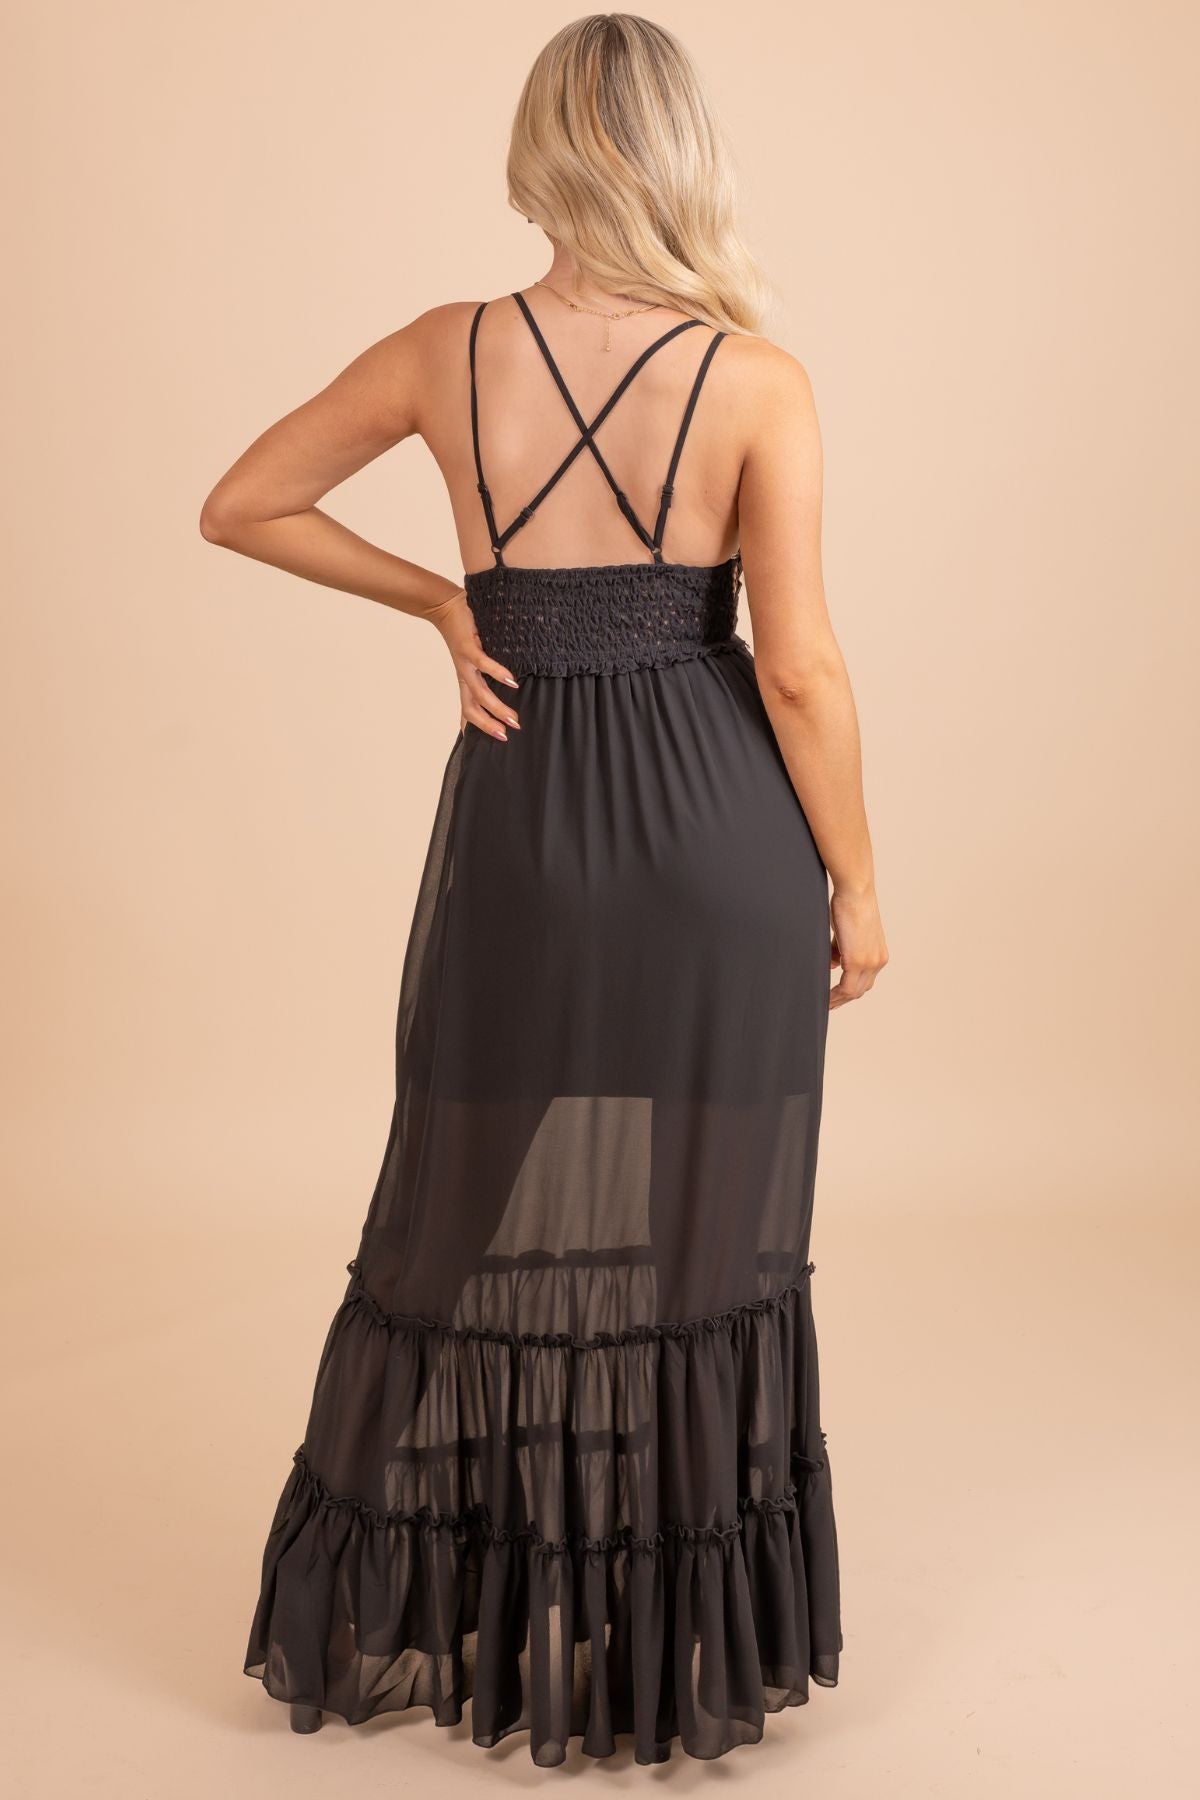 Women's Black Adjustable Strap Boutique Dress